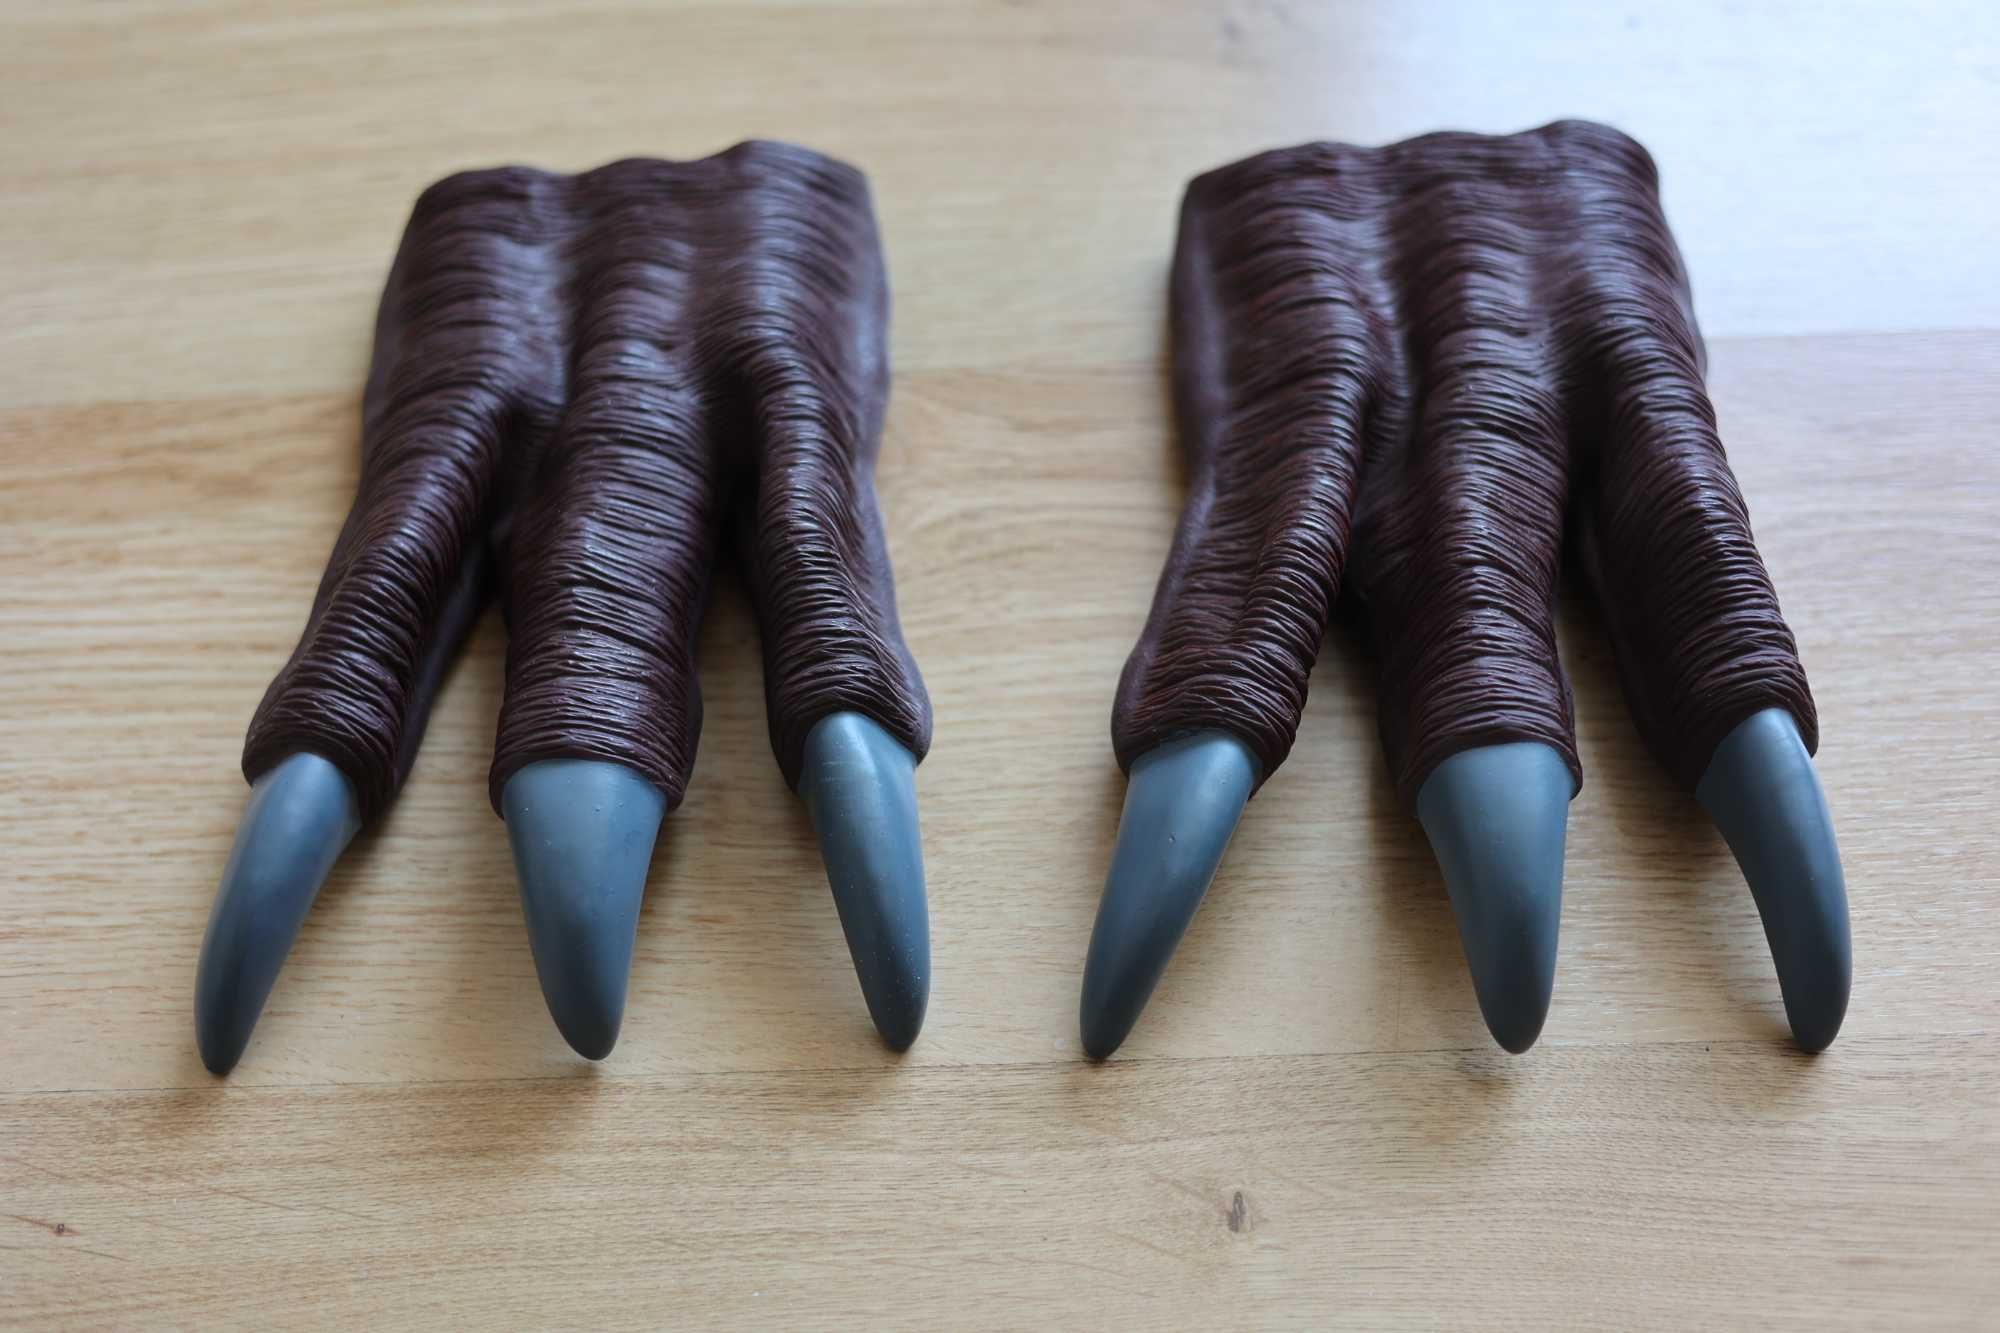 Mãos Dinossauro, cada par 15€